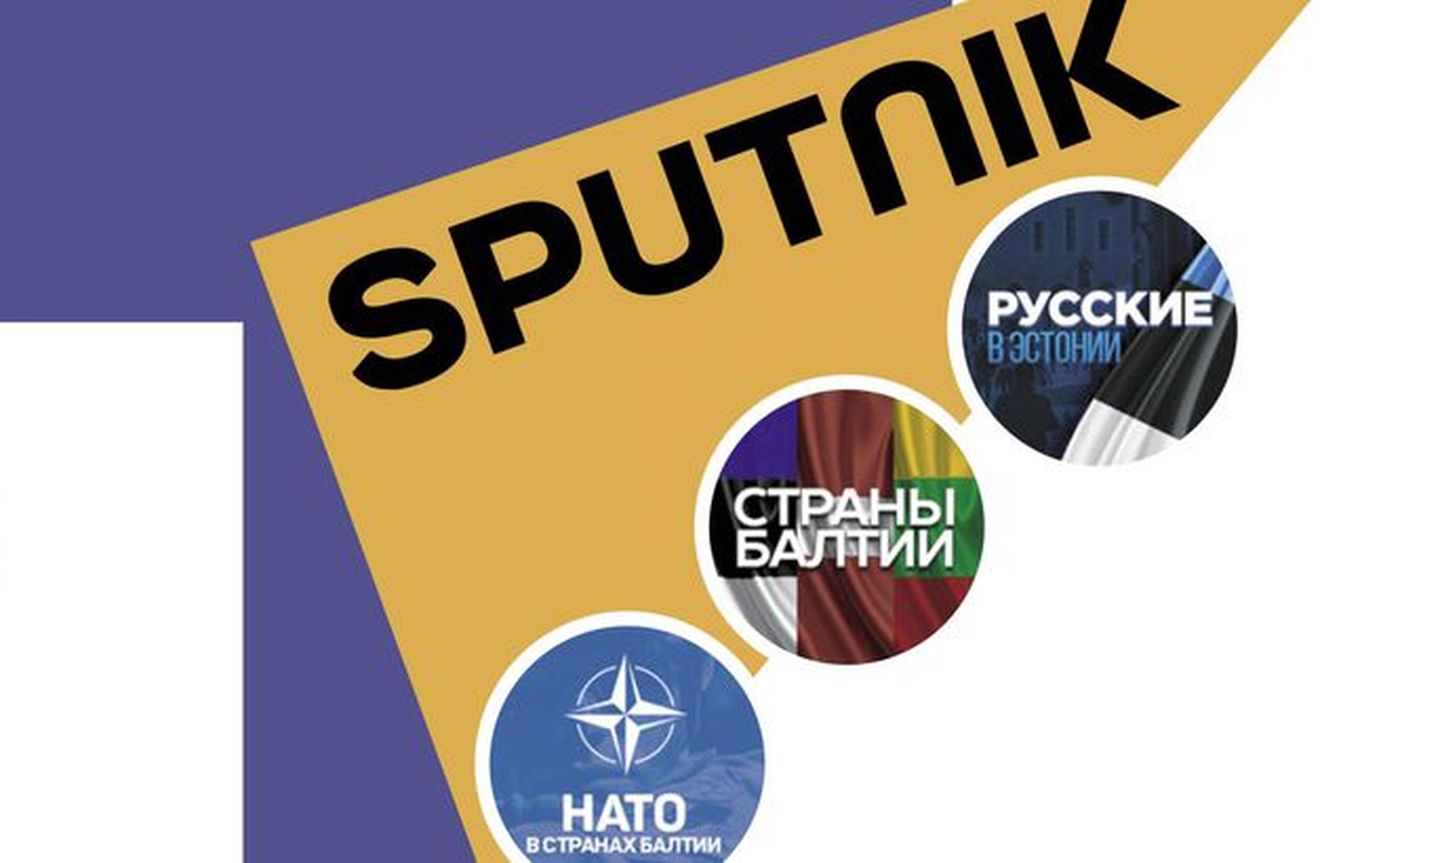 Sputniku loodud salavõrgustikus oli 13 Eestile suunatud lehekülge.